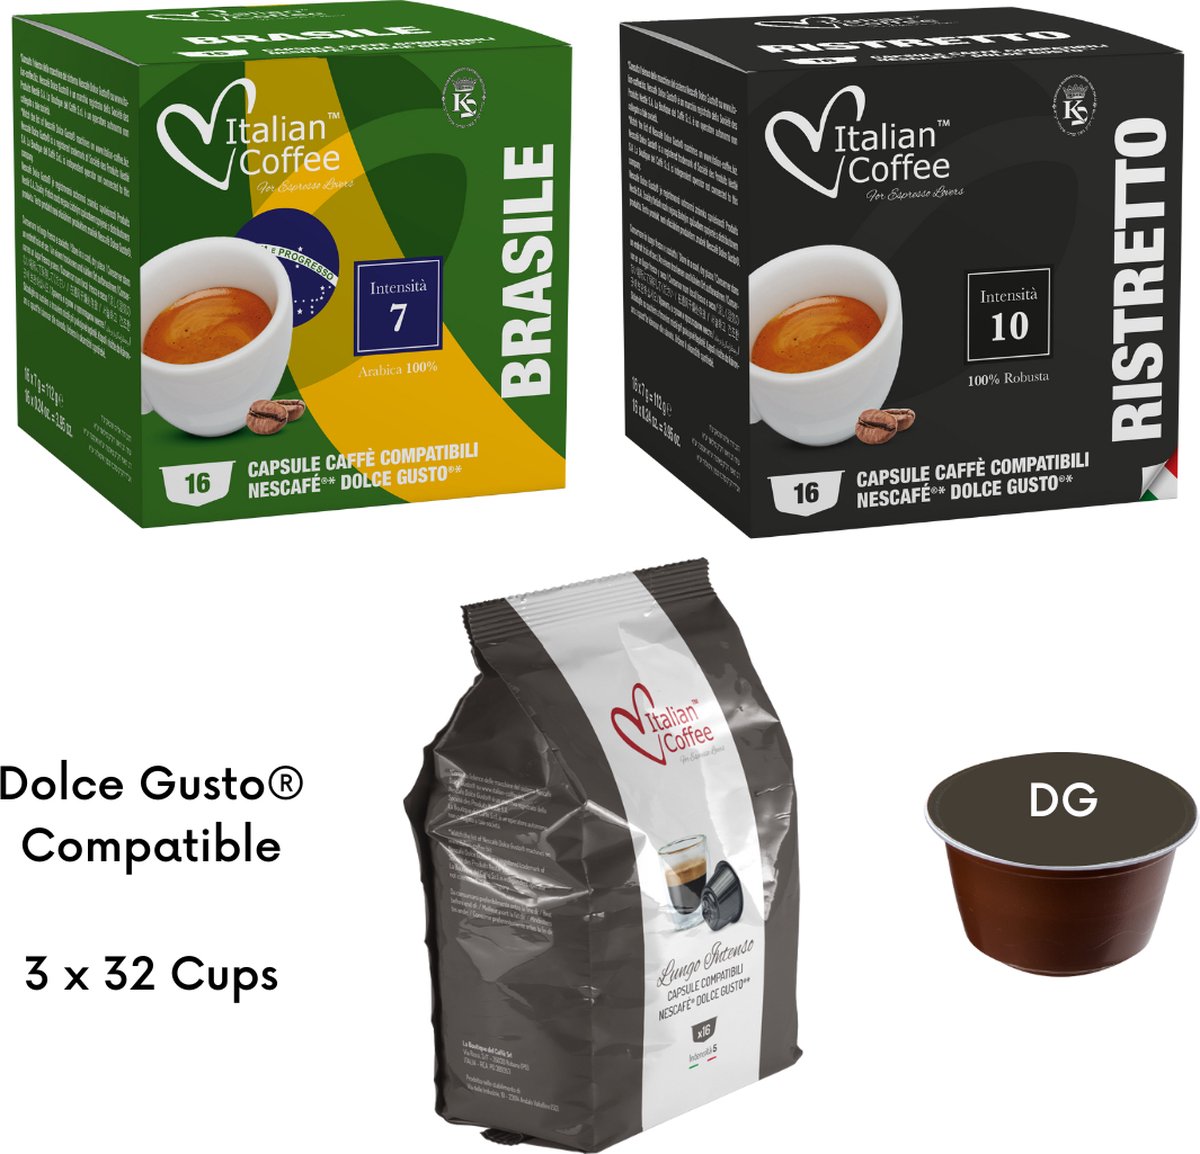 Italian Coffee - Ristretto, Lungo Intenso, Brazilië koffie - Geschikt voor Dolce Gusto Apparaat - 3 x 32 - Proefpakket